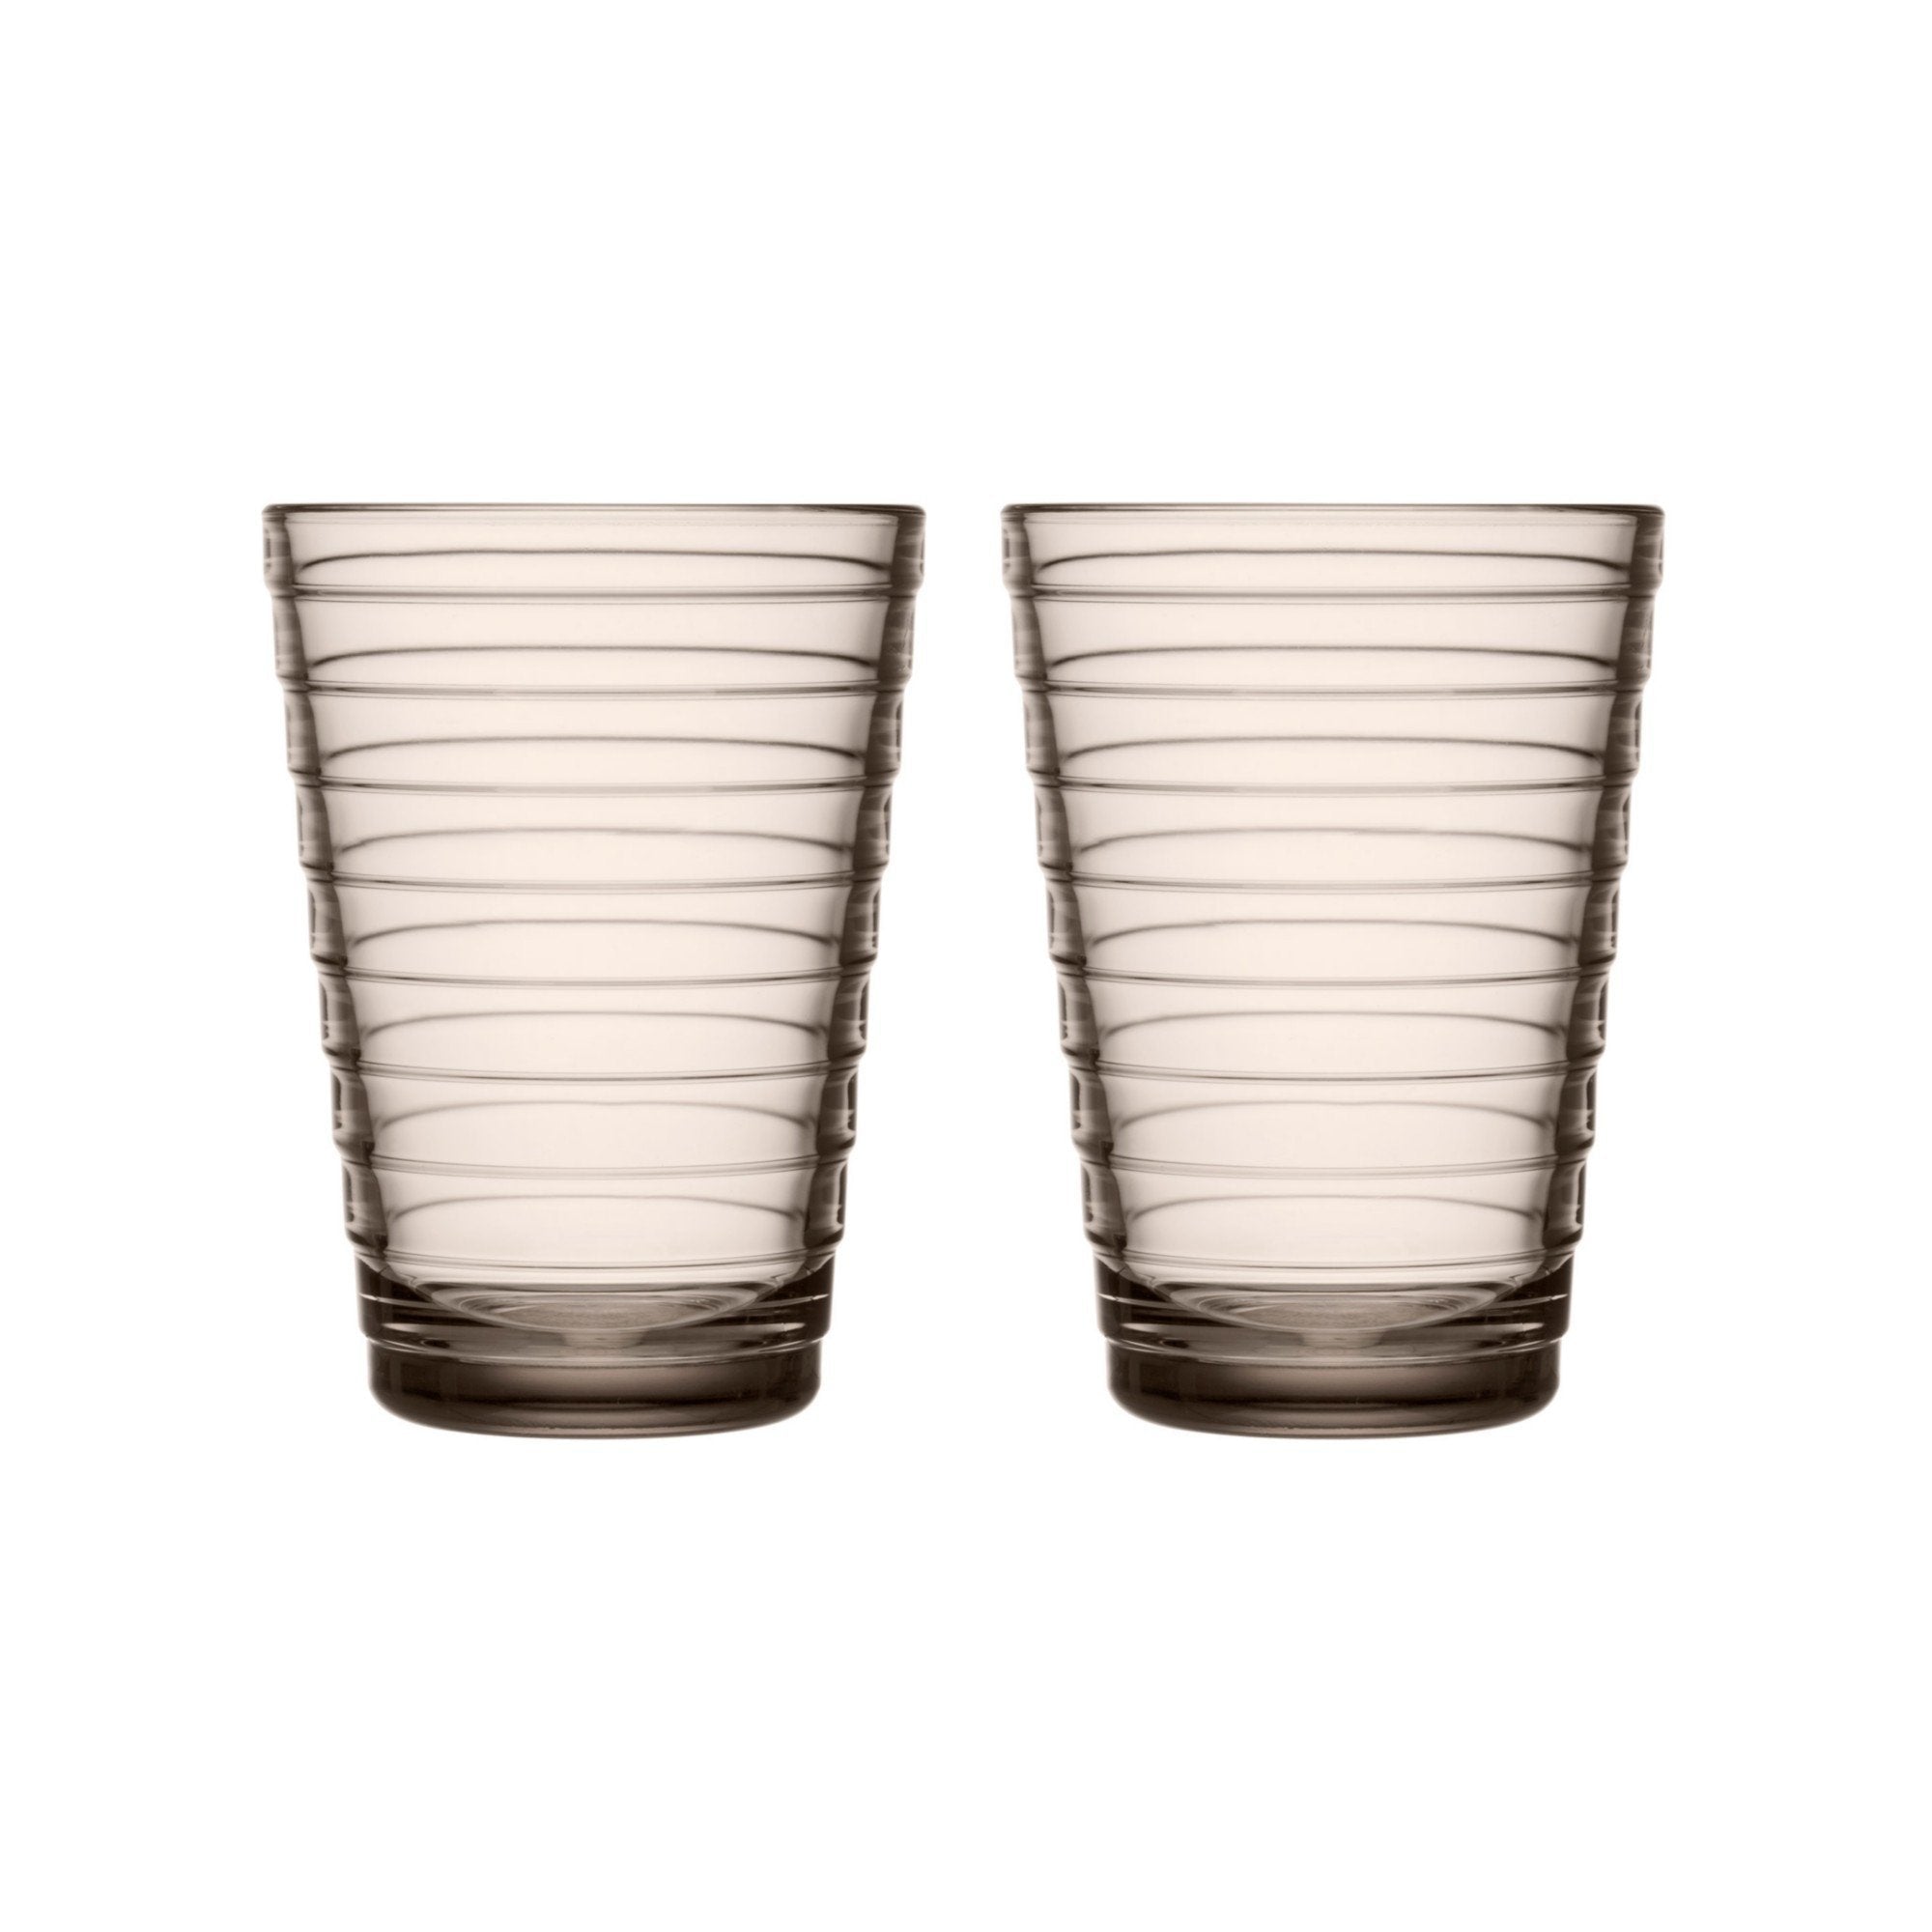 Iittala Aino Aalto Drinking Glass Linen 33cl, 2pcs.